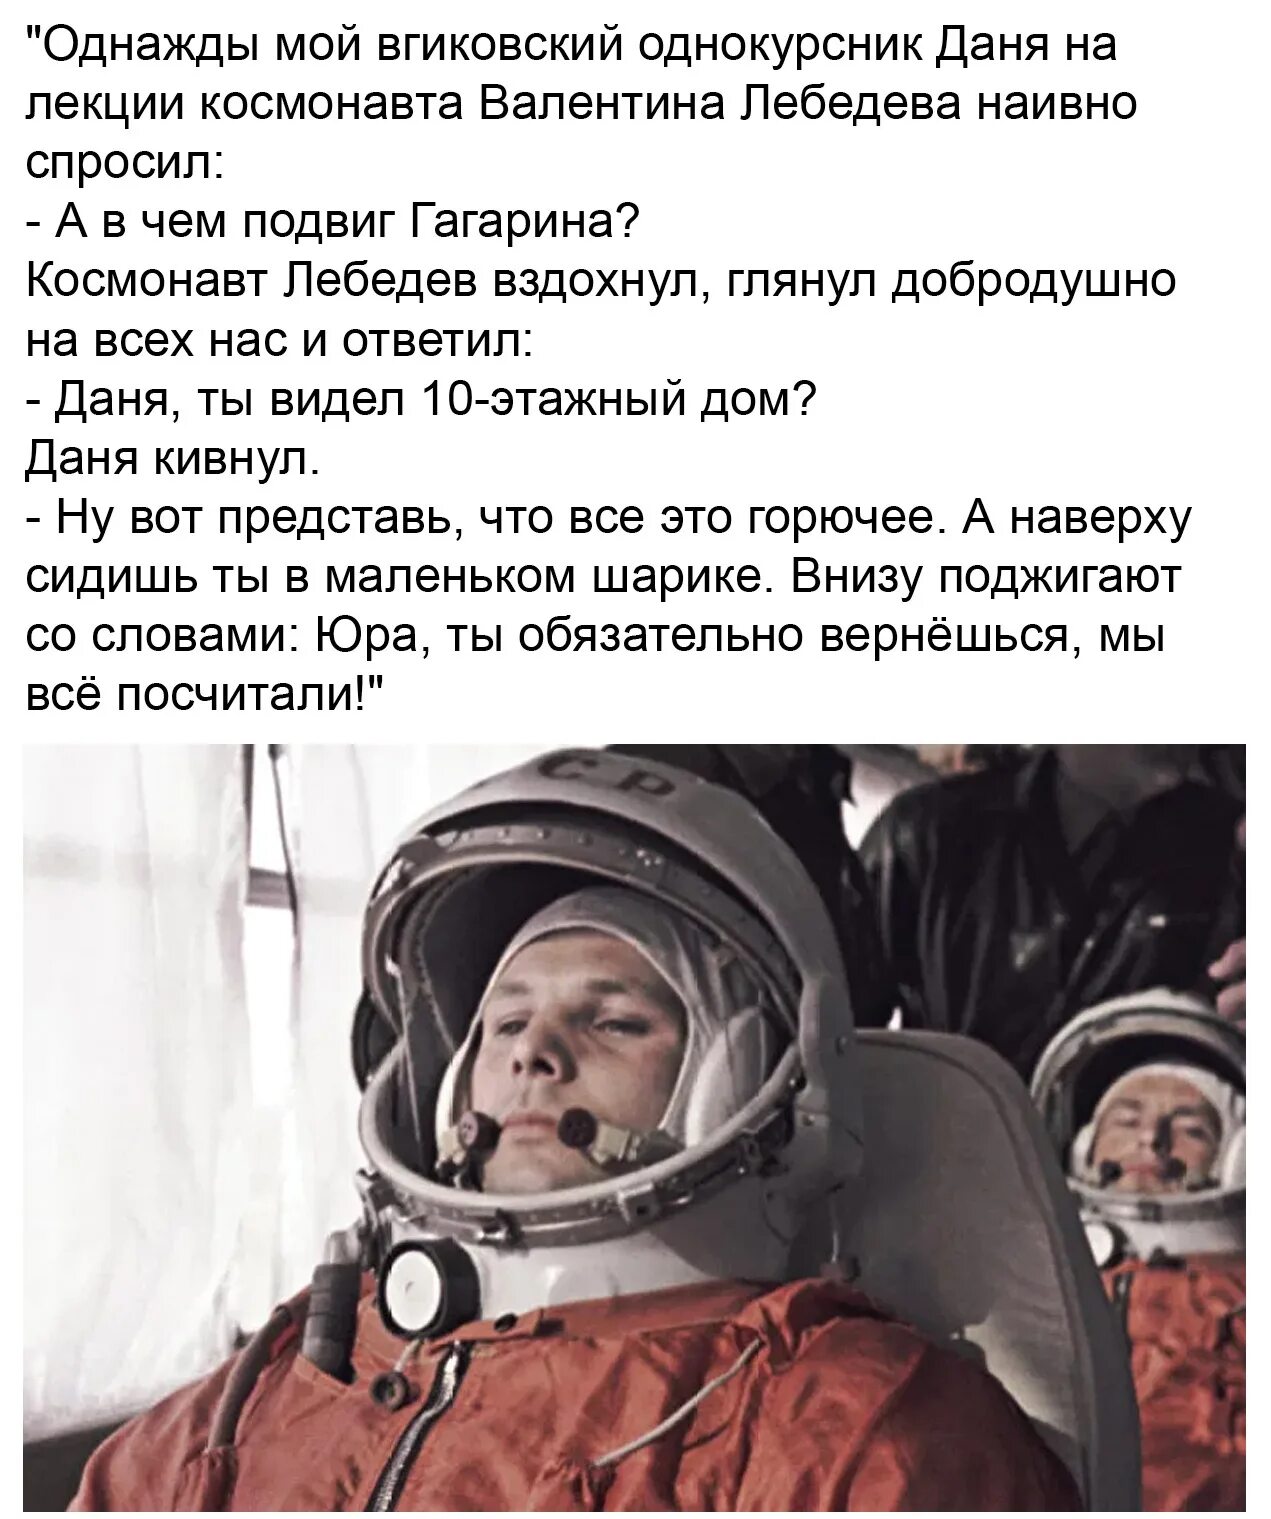 Ответы про гагарина. Подвиг Юрия Гагарина. Подвиги Космонавта Гагарина. Гагарин космонавт. Великий подвиг Гагарина.